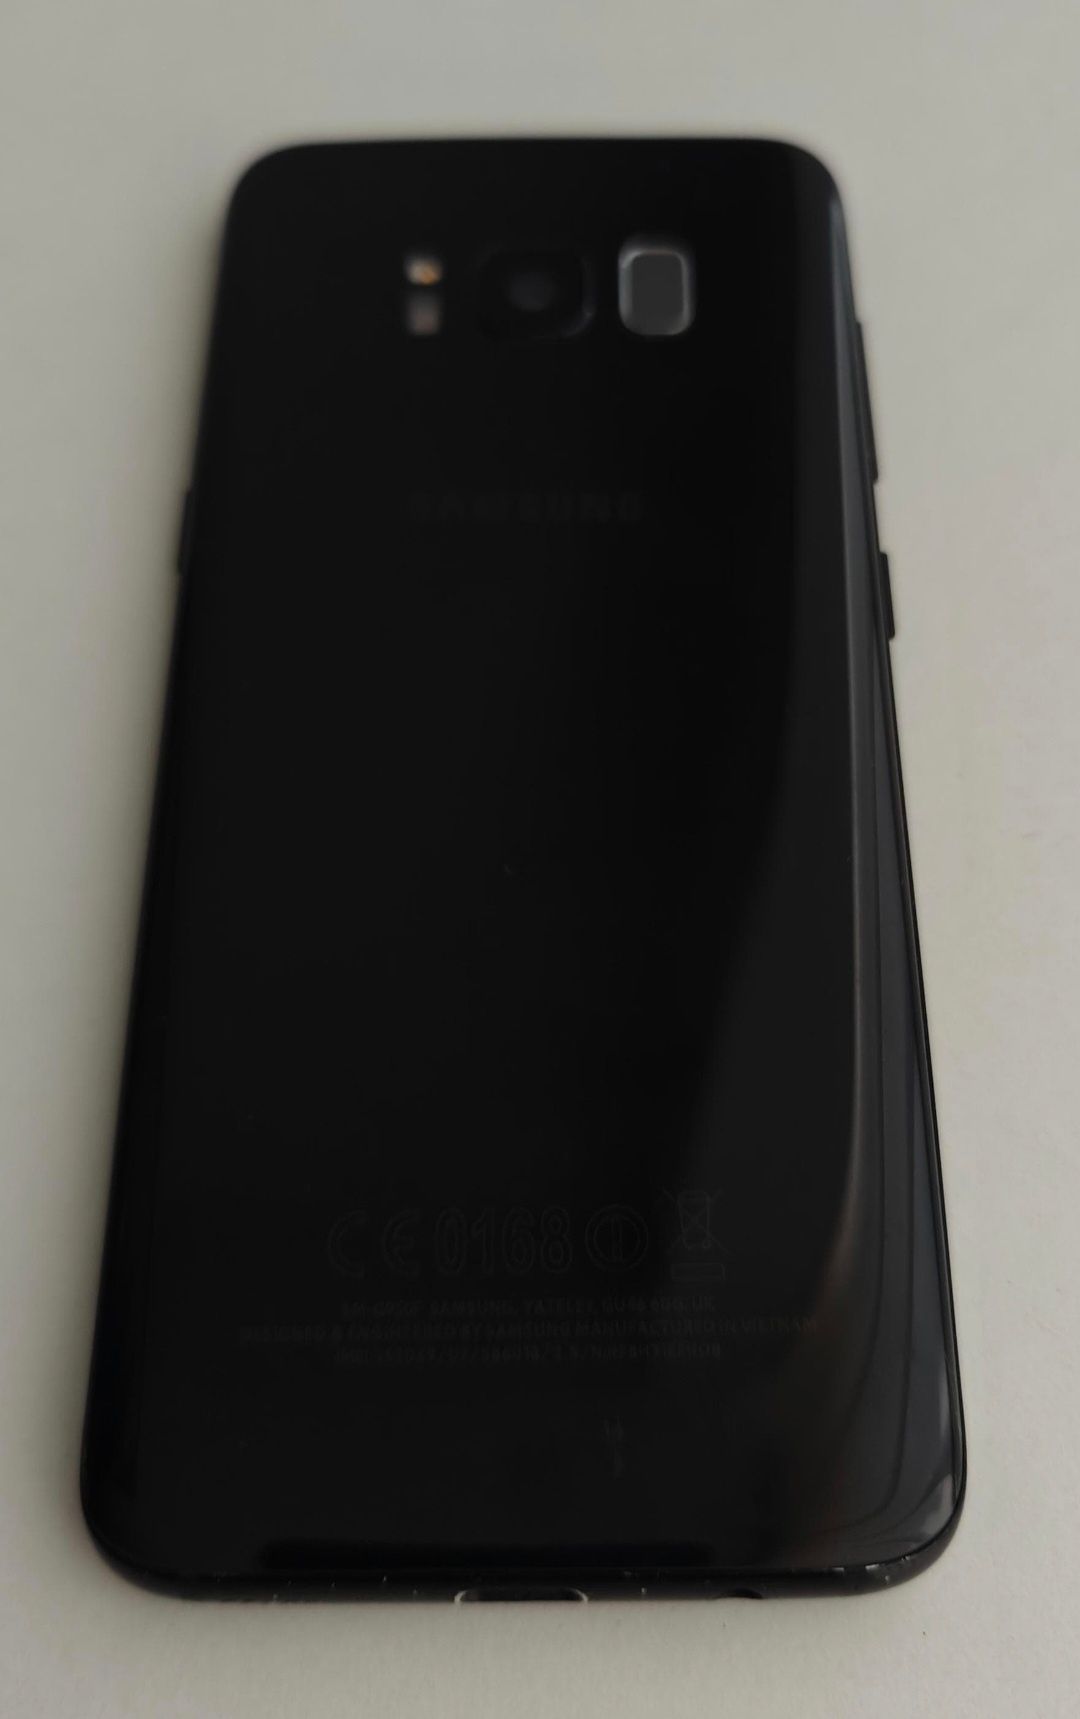 Samsung galaxy s8